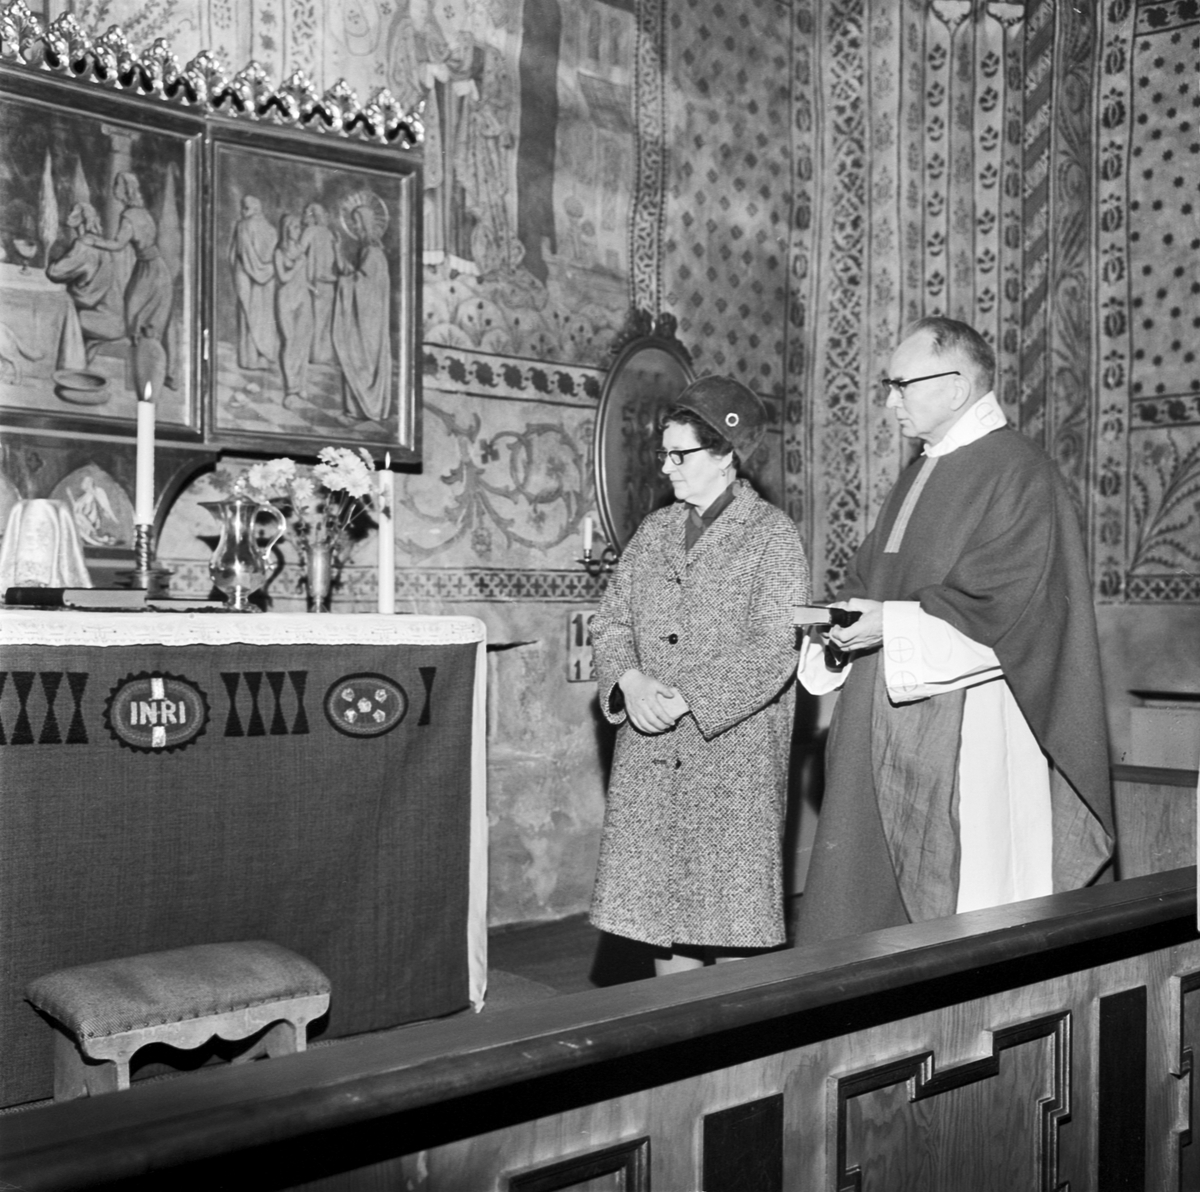 "Var finns alltavlan i Tolfta kyrka", Uppland 1968